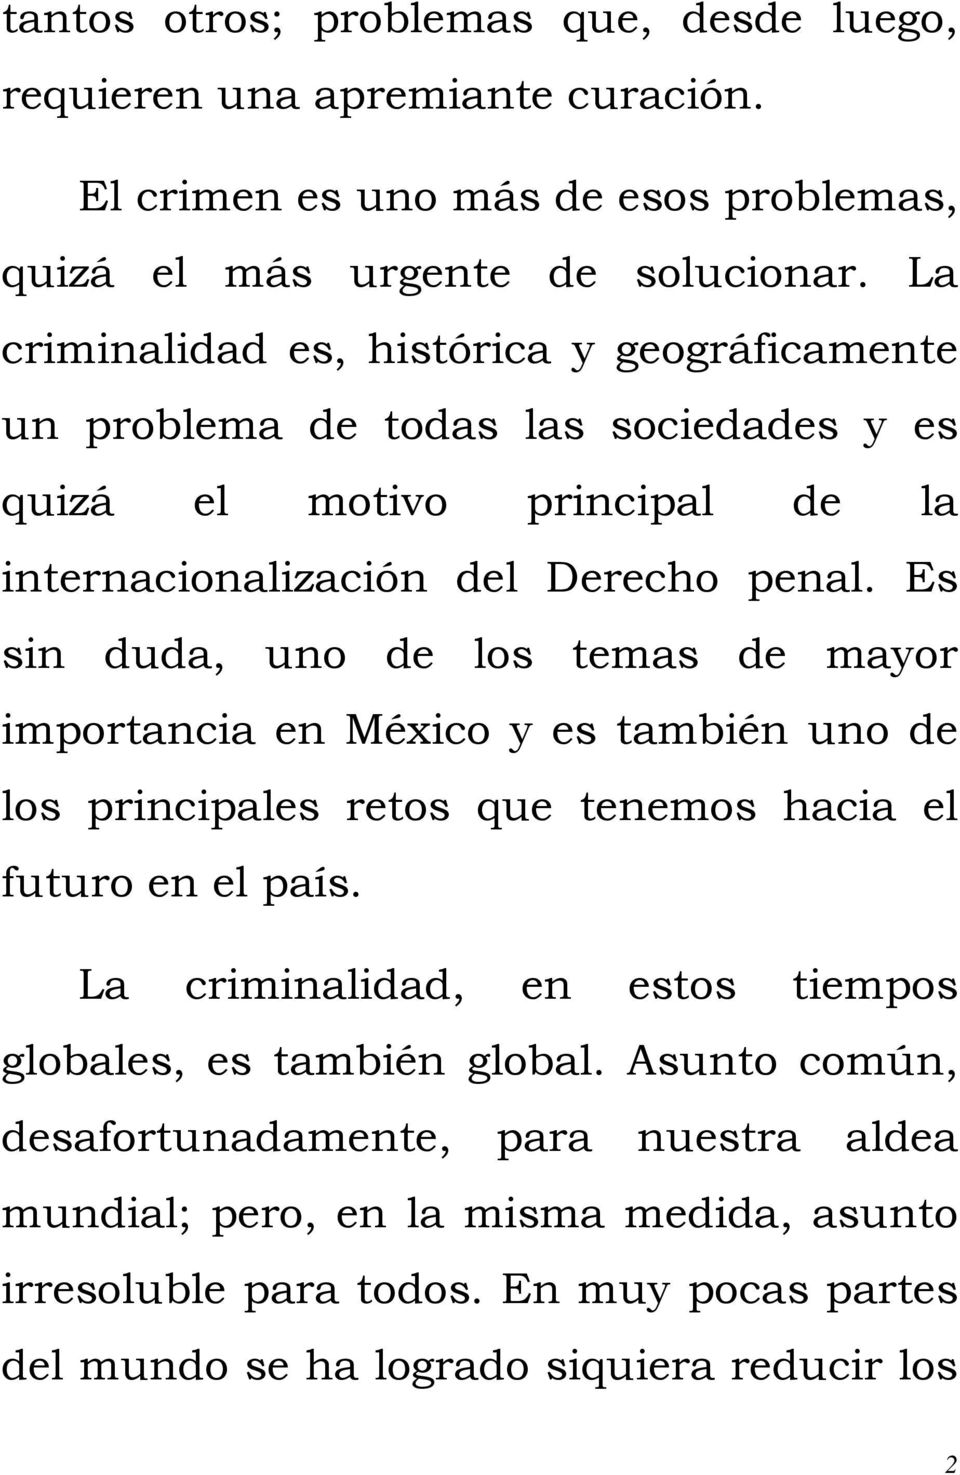 Es sin duda, uno de los temas de mayor importancia en México y es también uno de los principales retos que tenemos hacia el futuro en el país.